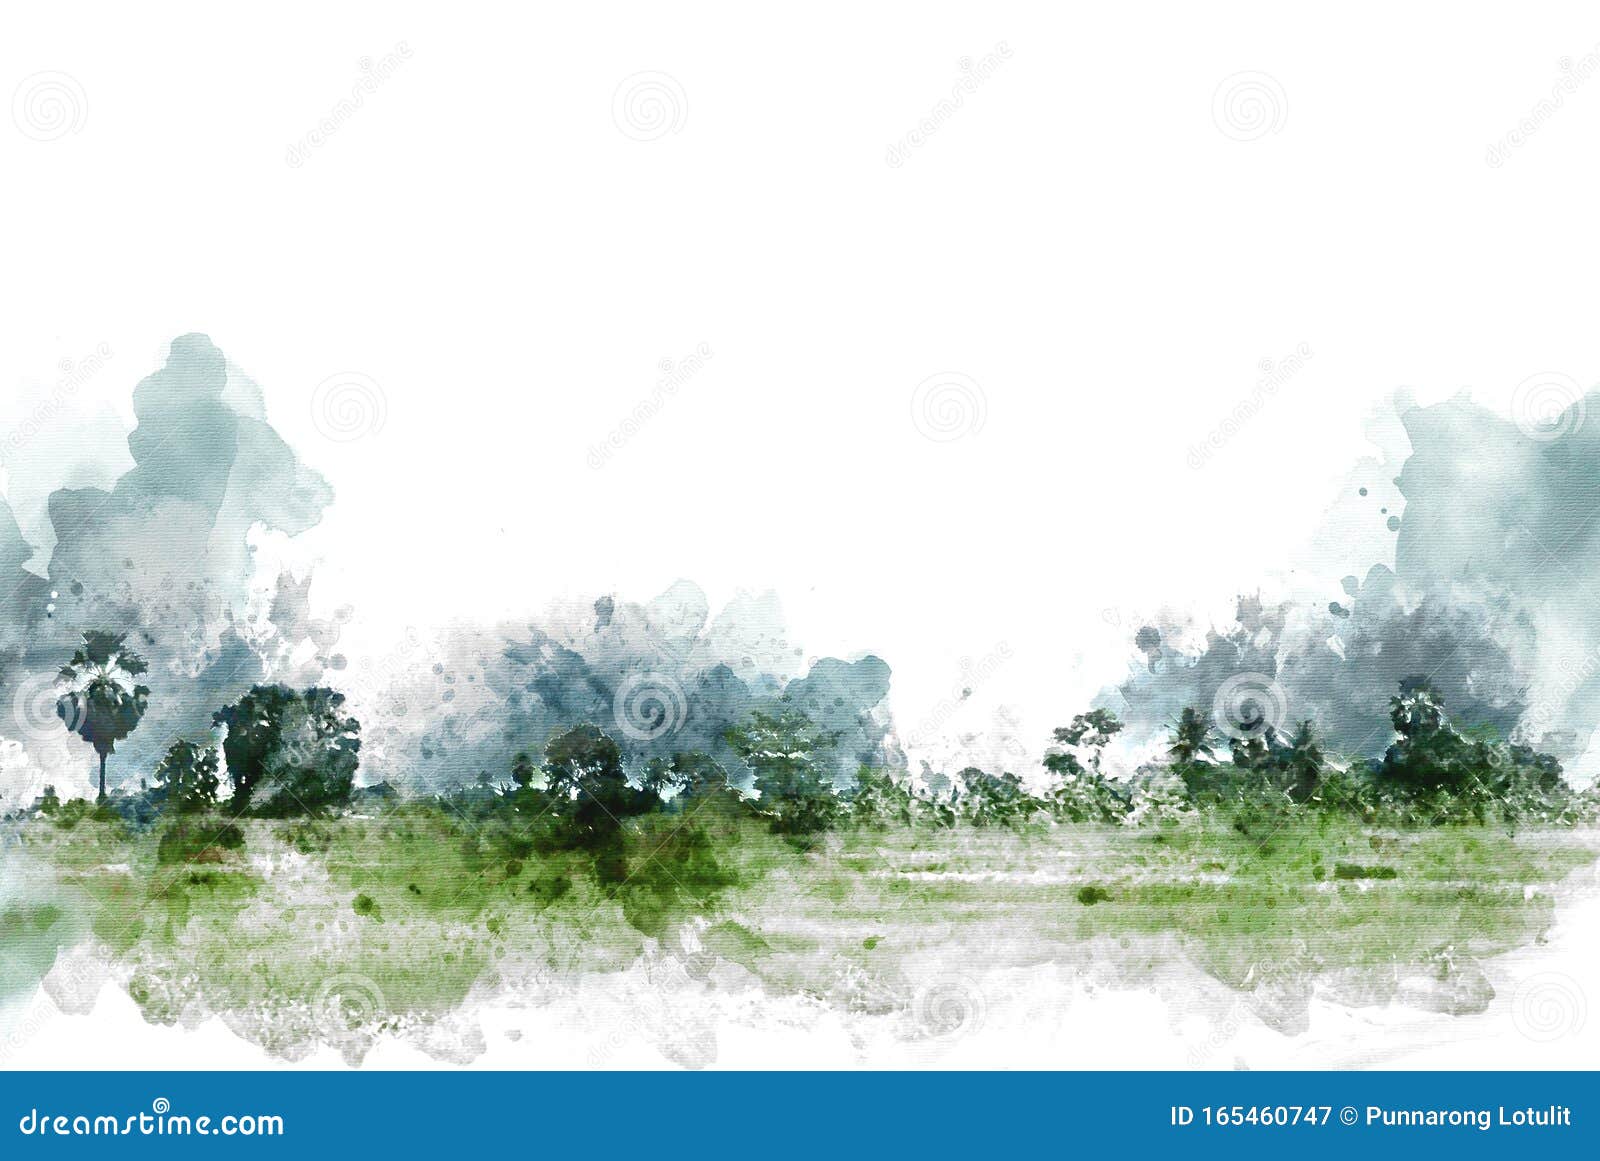 Antecedentes De Pintura De Ilustraciones De Acuarelas De árbol Abstracto Y  Paisajes De Campo Imagen de archivo - Imagen de colorido, gota: 165460747